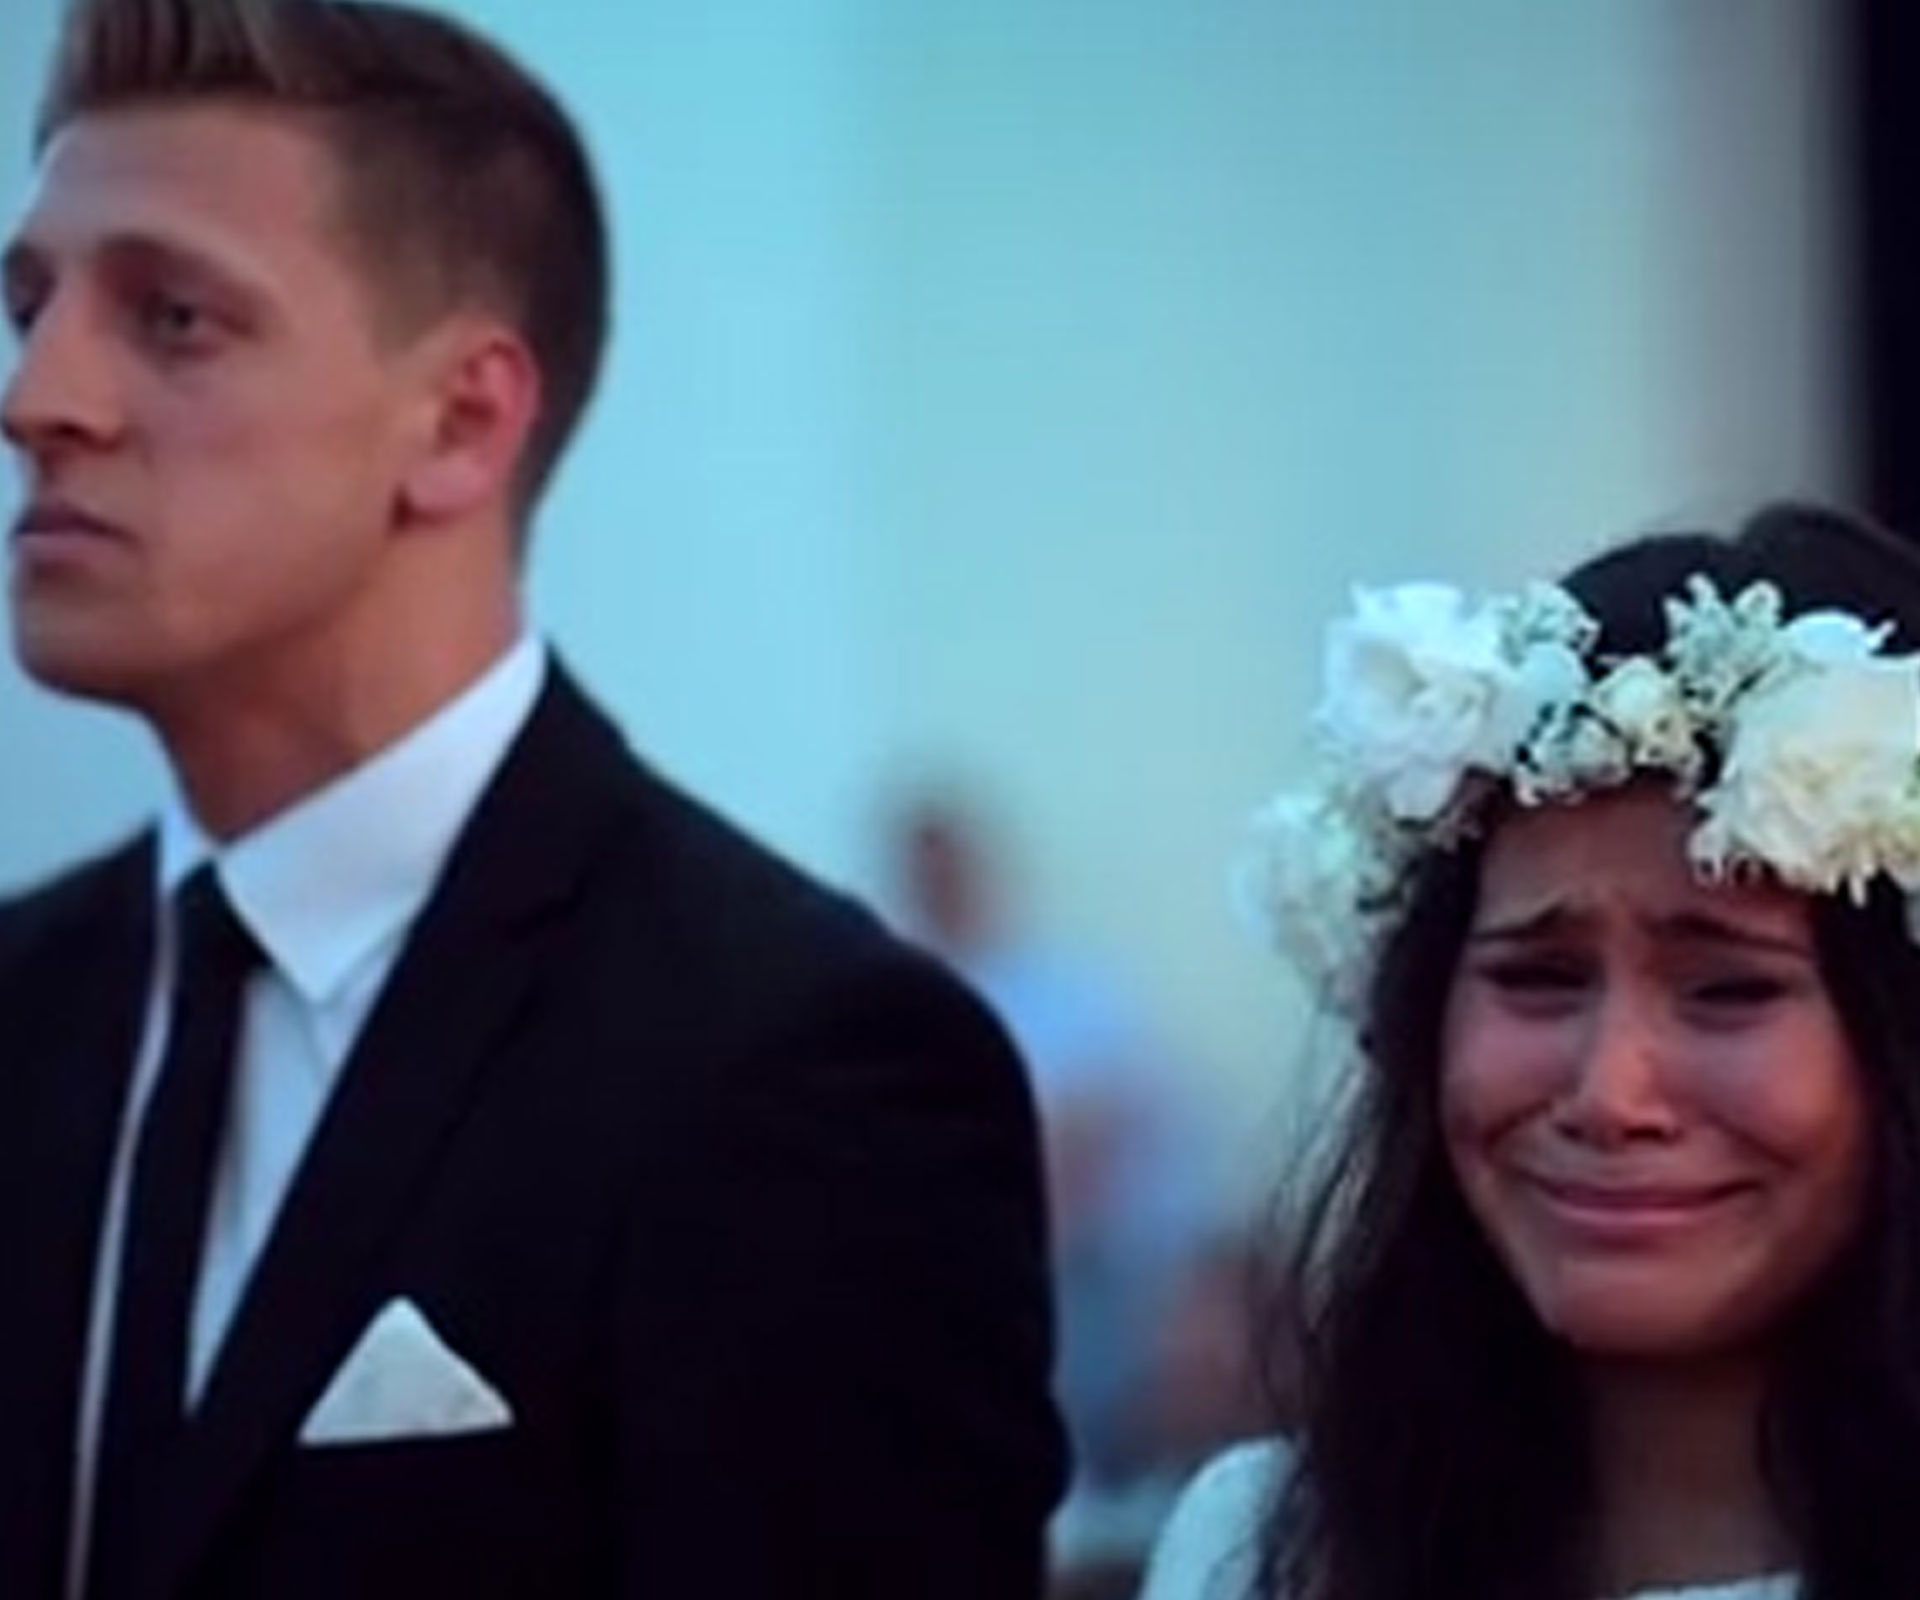 Emotional haka at wedding goes viral